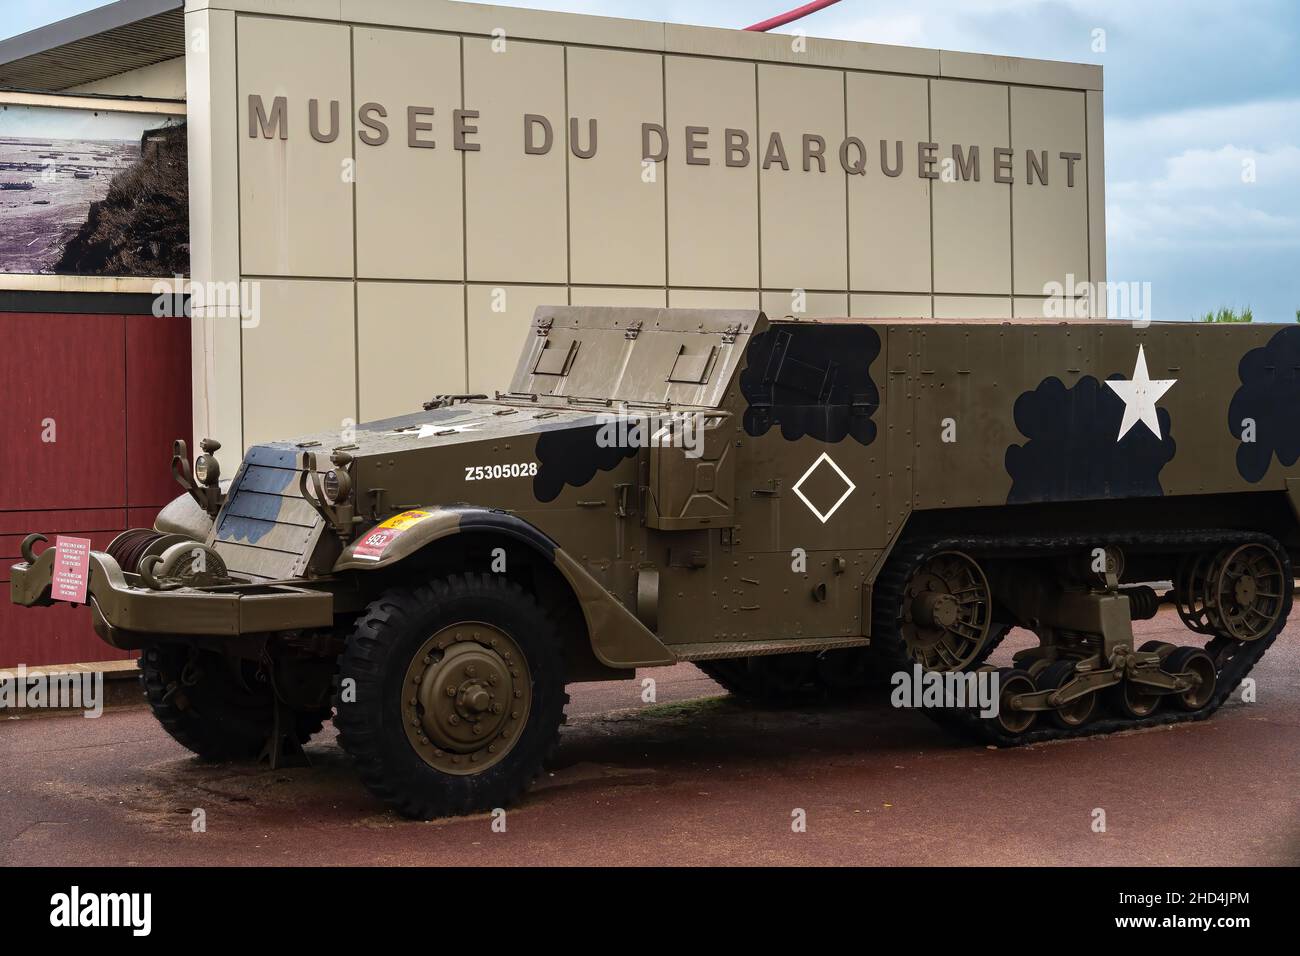 Arromanches, Francia - 2 agosto 2021: Musee du Debarquement - traduzione: Landing Museum. Veicolo militare americano armato davanti all'edificio. Foto Stock